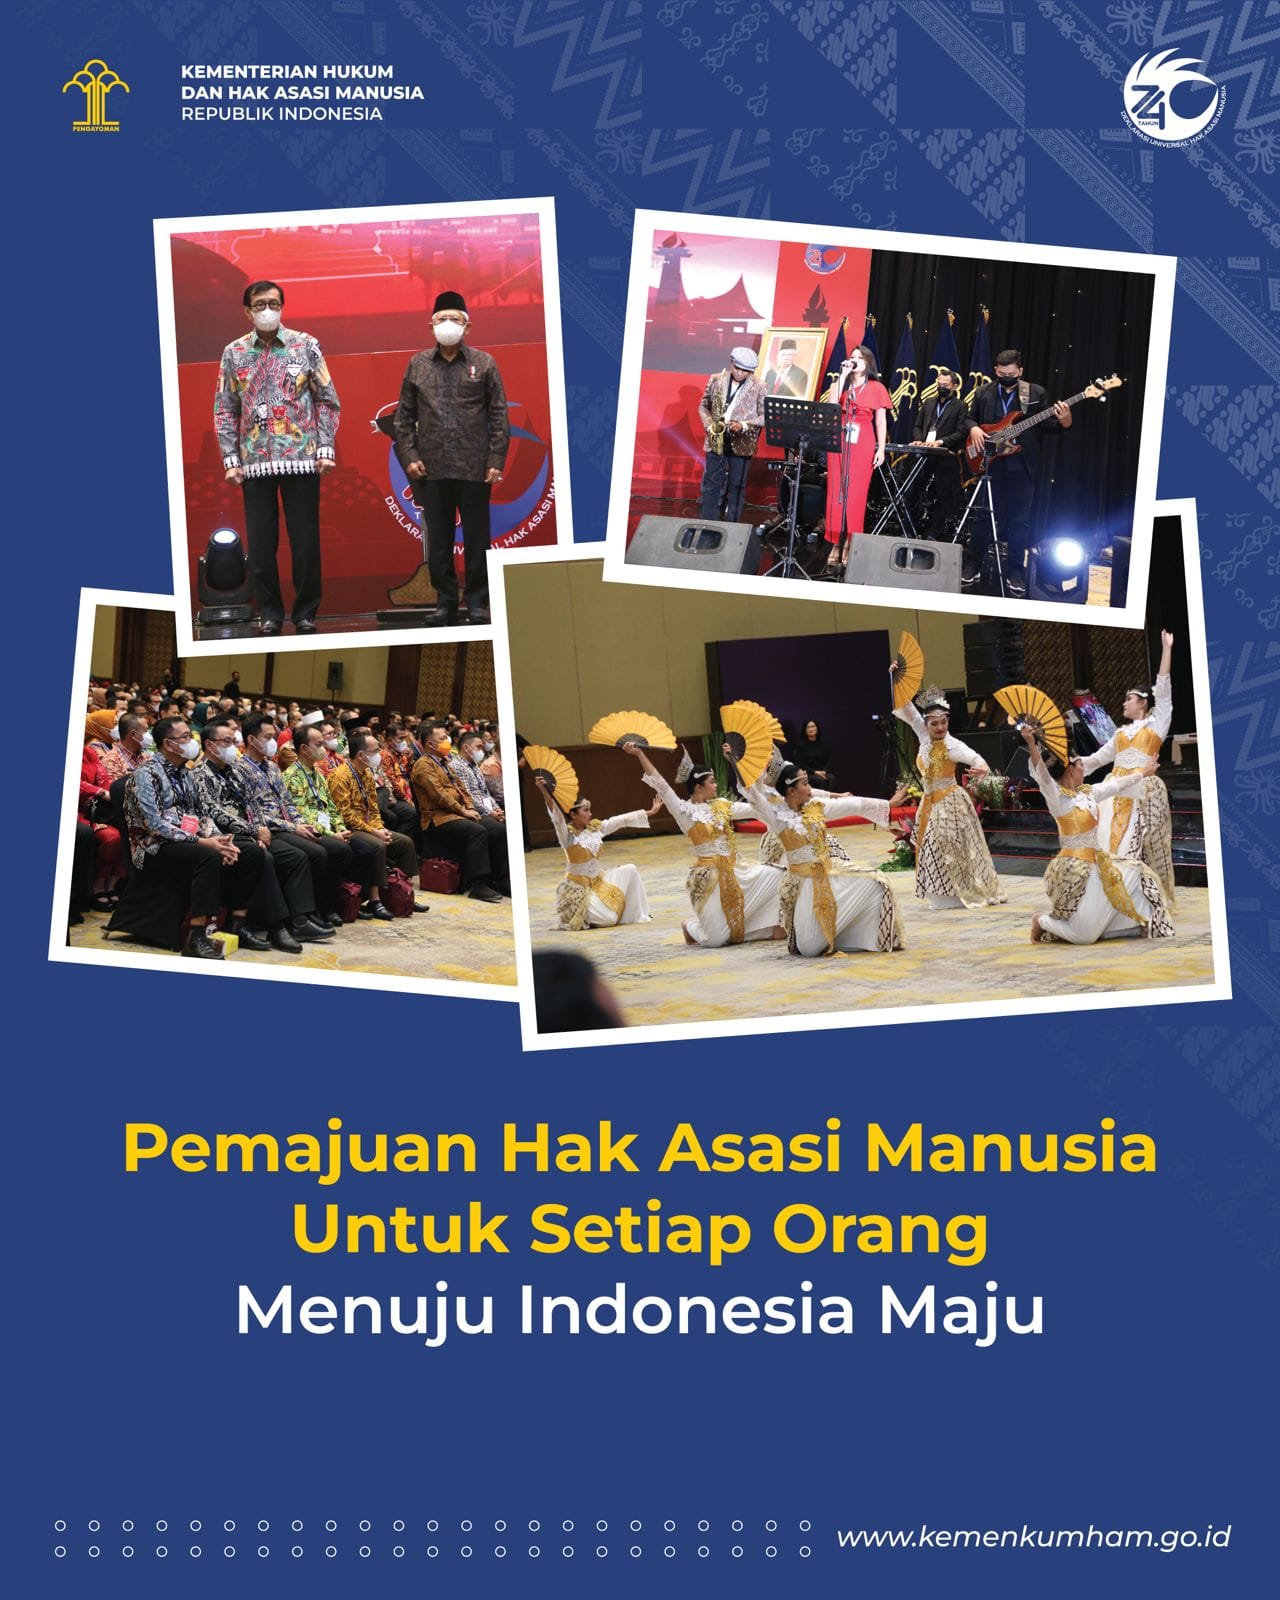 Pemajuan HAM untuk Setiap Orang “Menuju Indonesia Maju”